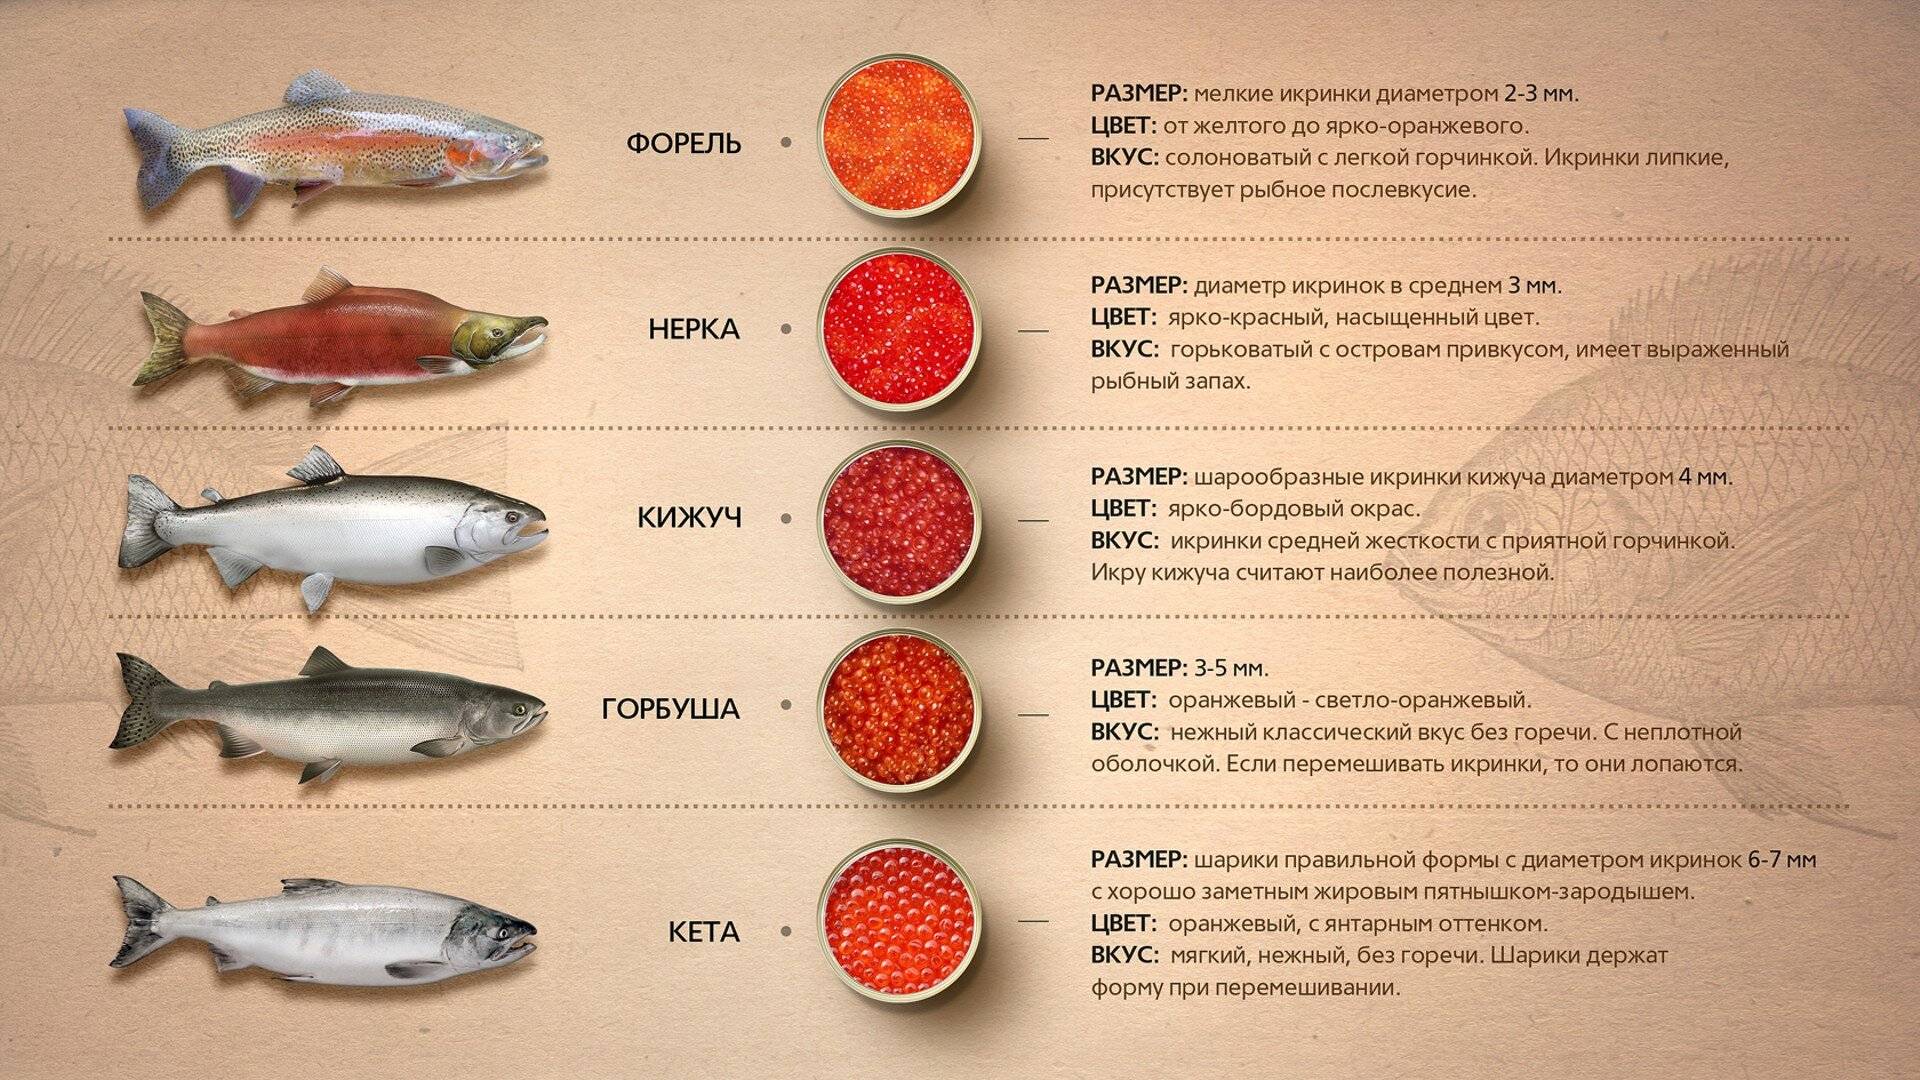 Кижуч — серебряный лосось